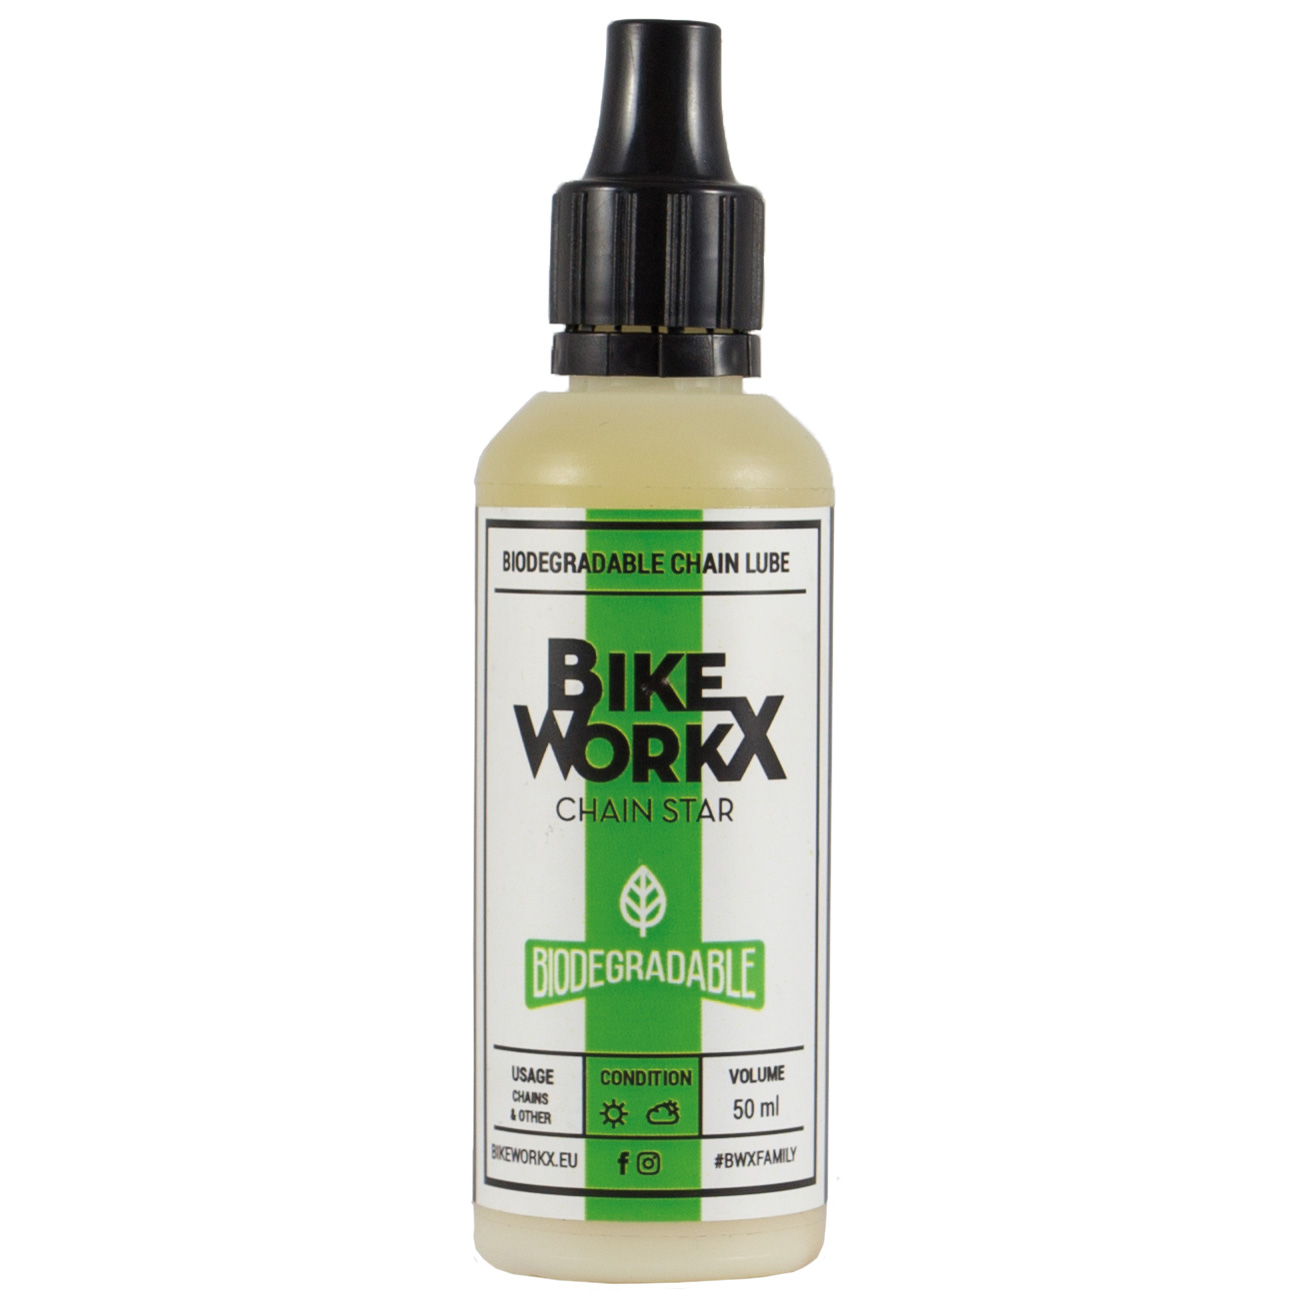 Produktbild von BikeWorkx Chain Star Biodegradable - Kettenöl - Applikatorflasche - 50ml